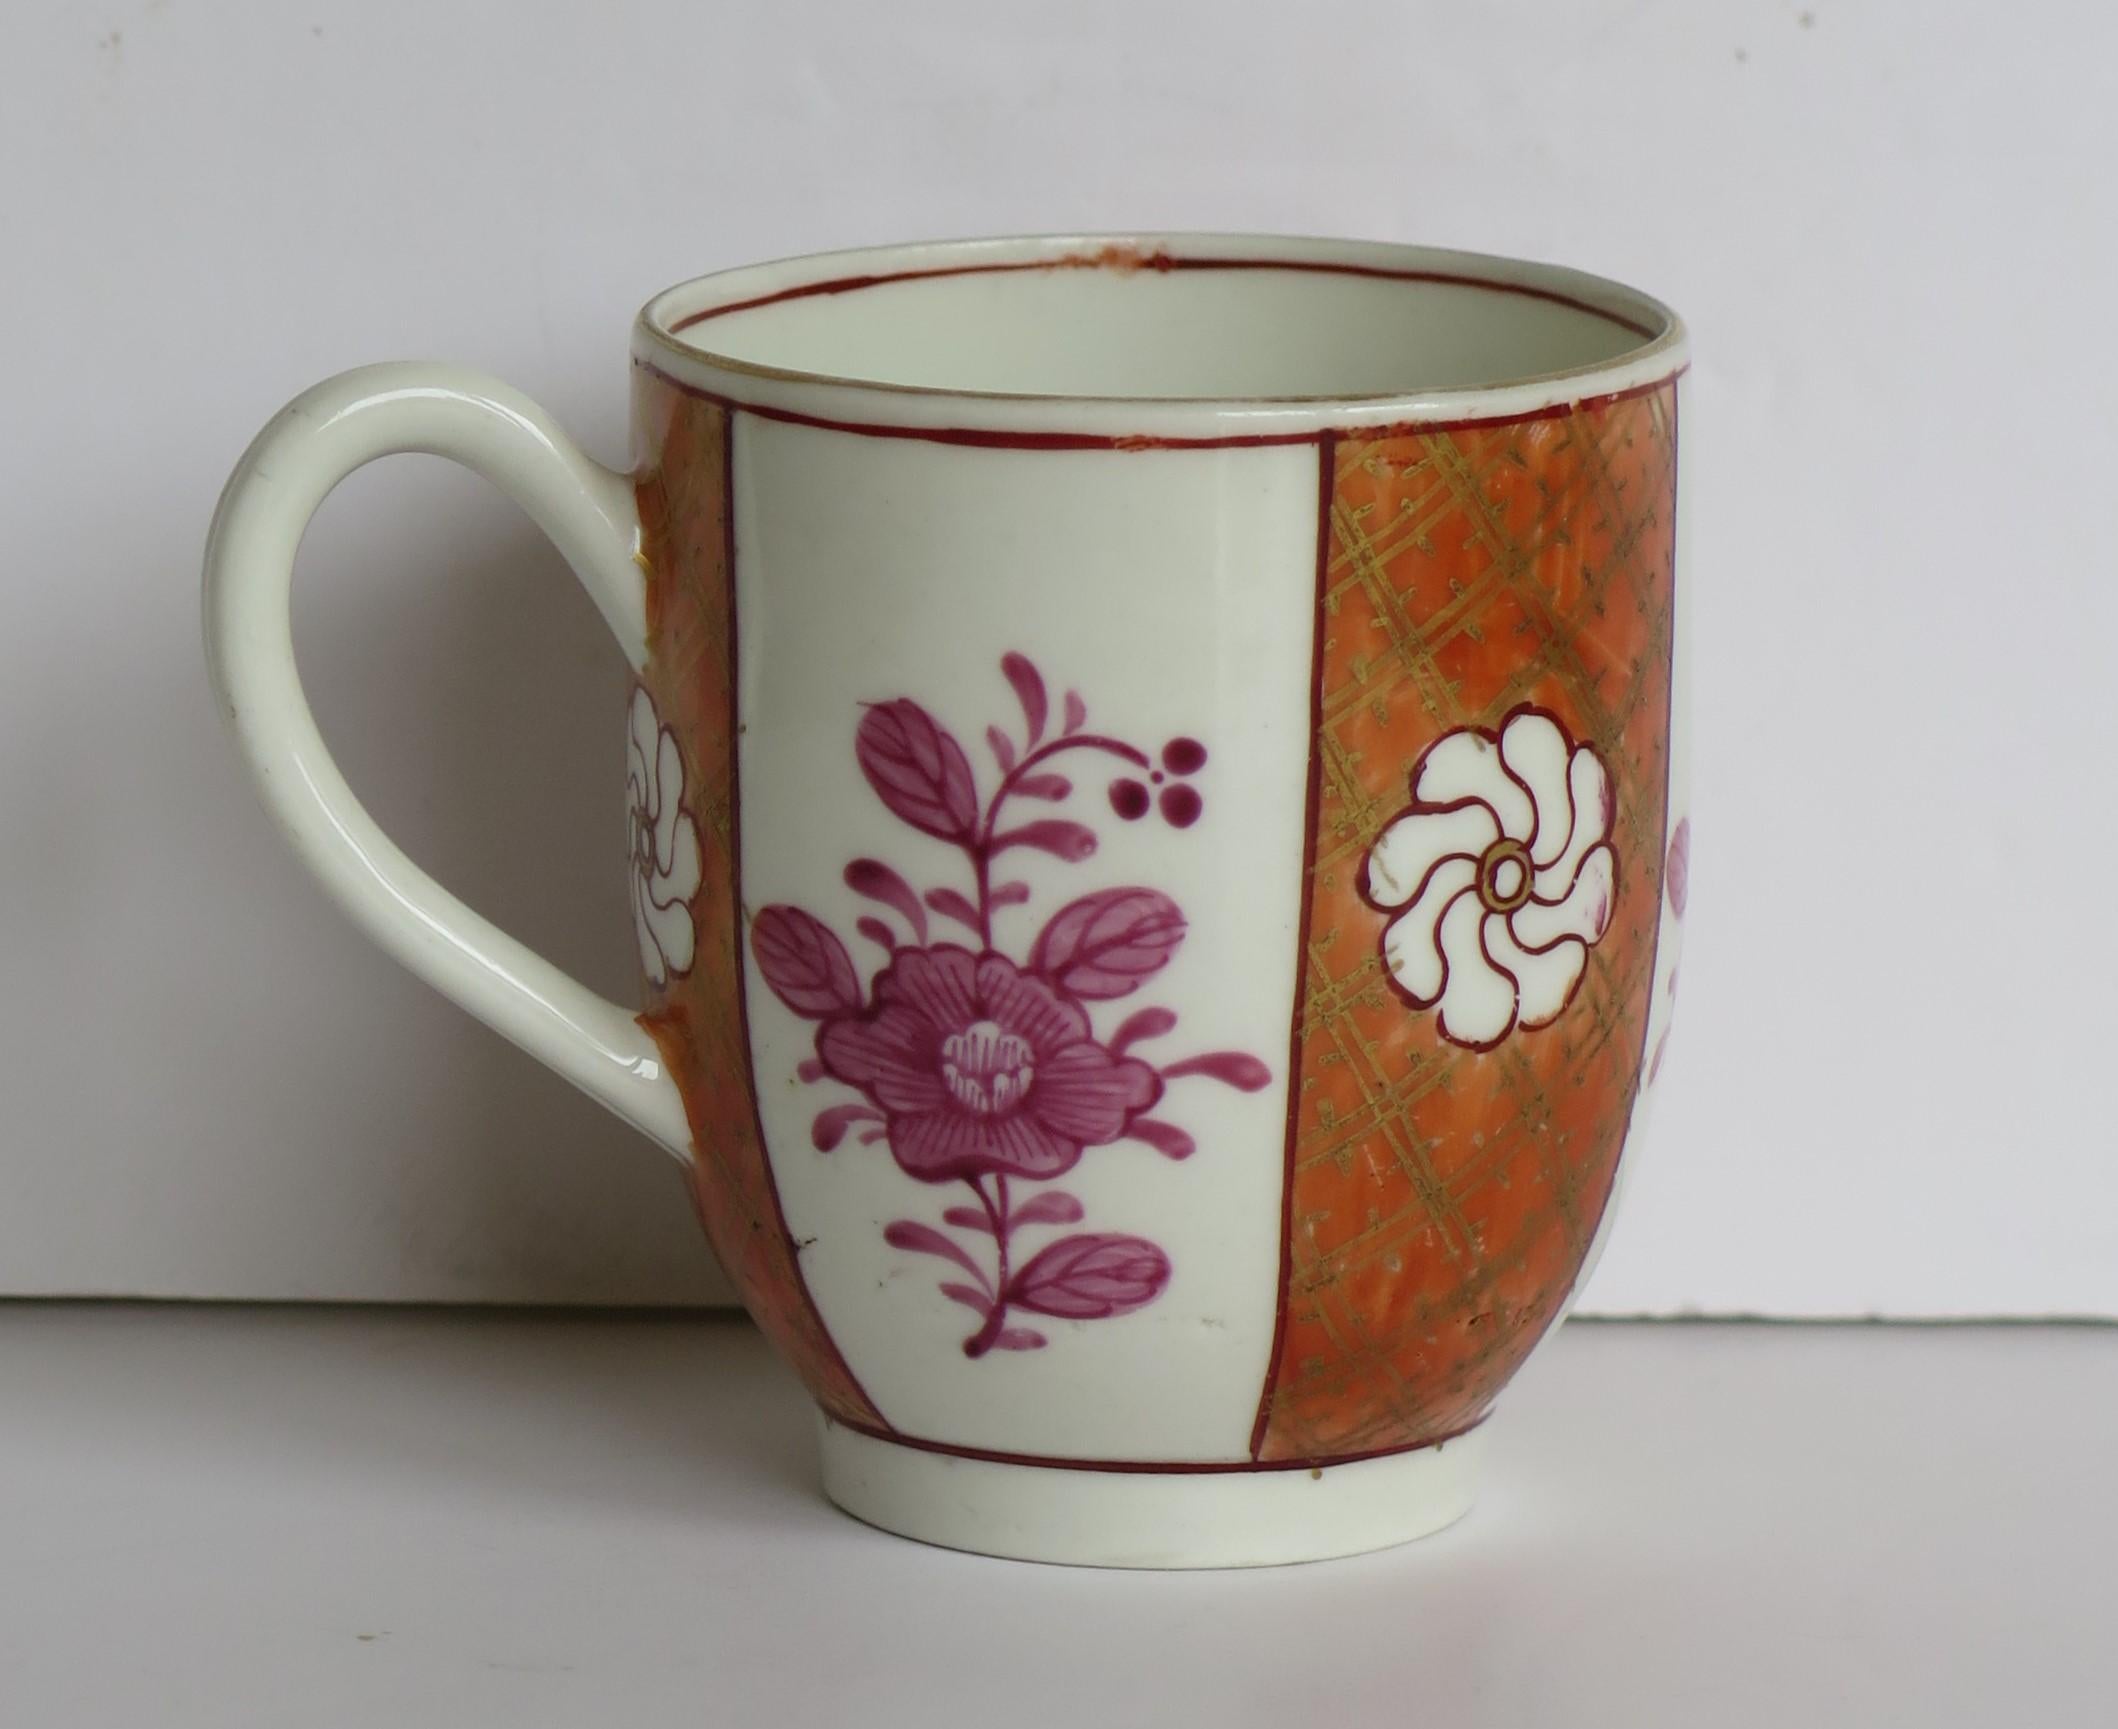 Dies ist eine seltene erste Periode (oder Dr. Wall) Worcester Kaffeetasse, mit einem unverwechselbaren handgemalten Muster, aus Porzellan und aus dem 18. Jahrhundert, um 1770.

Die Tasse ist gut getöpfert und hat einen gerillten Henkel 

Diese